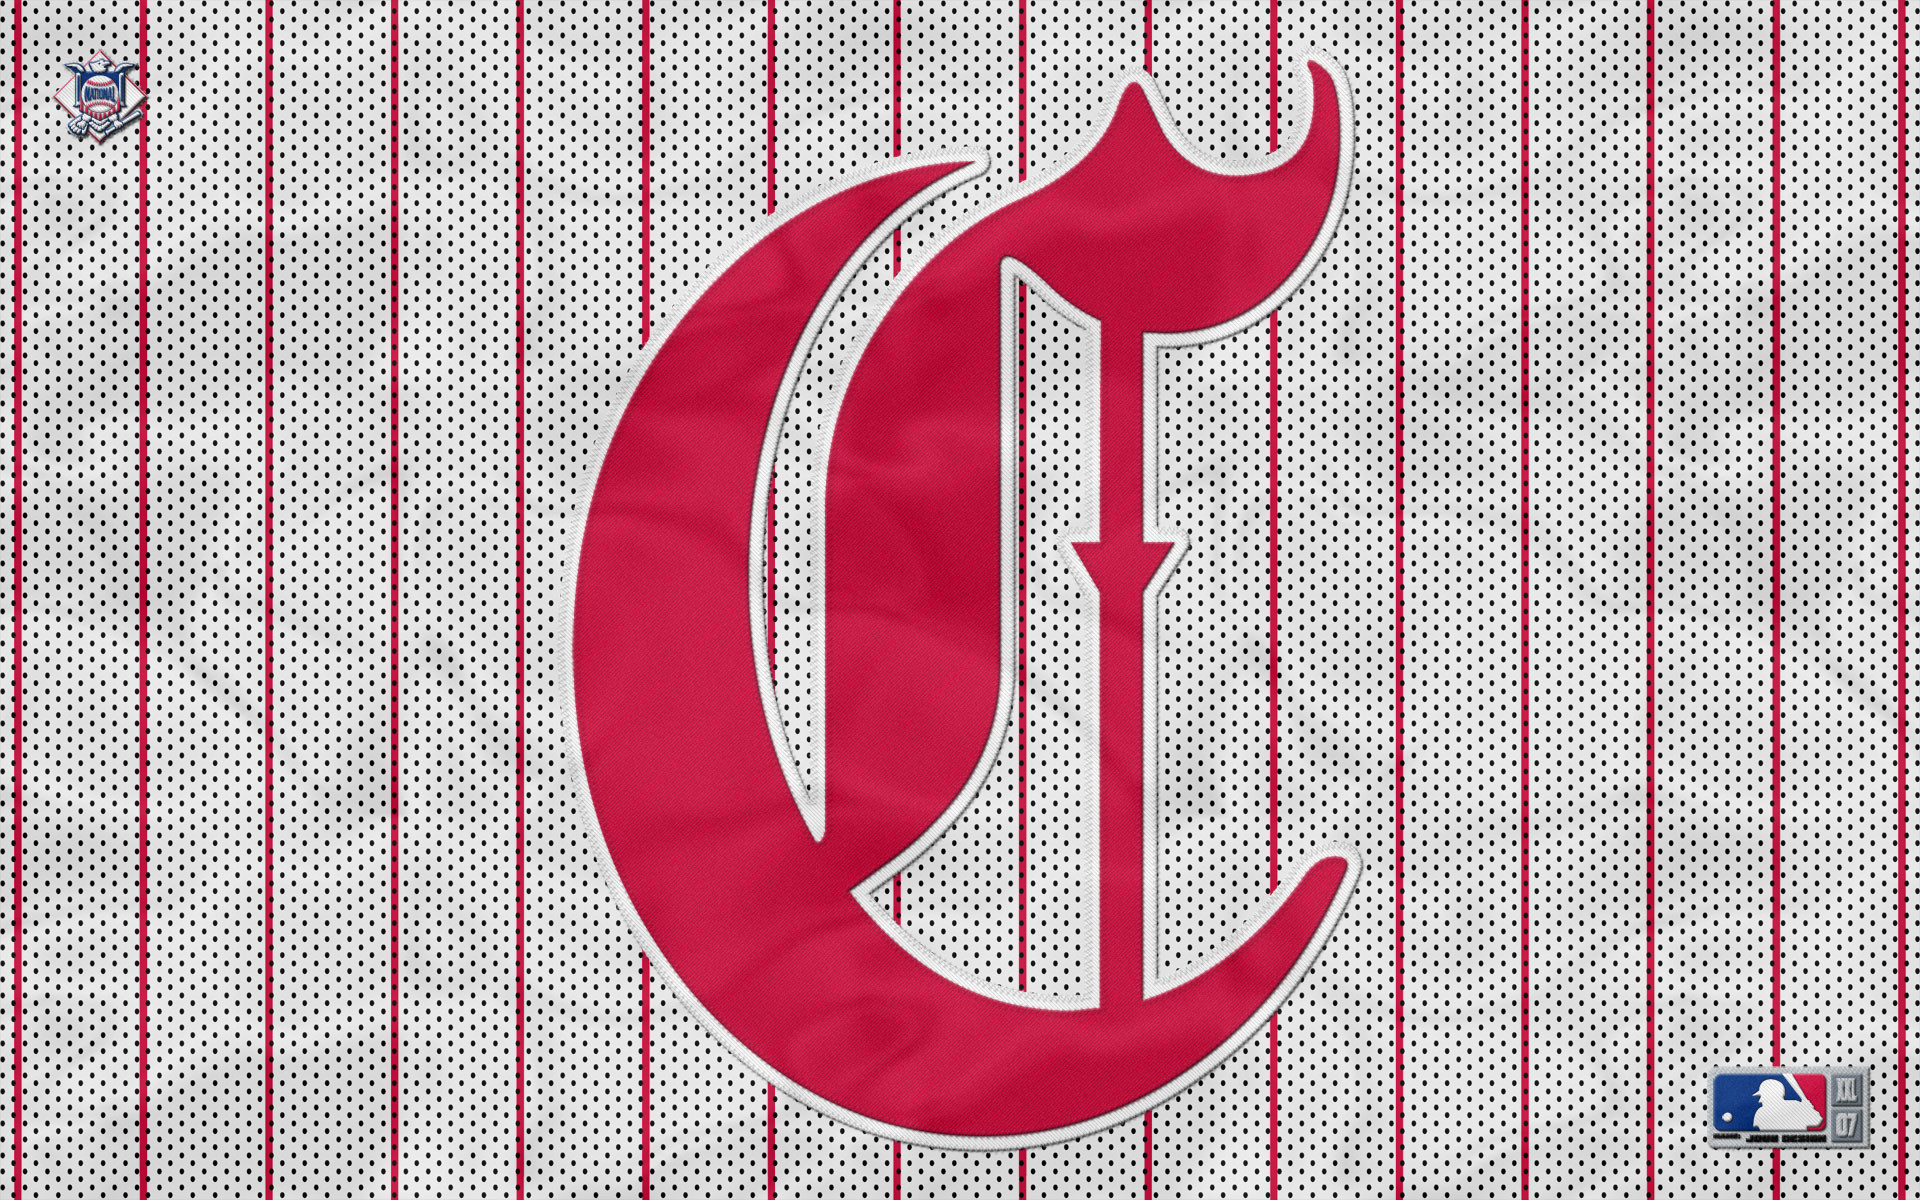 Mlb wallpapers.com / bulkupload / baseball / Cincinnati Reds / Cincinnati Reds